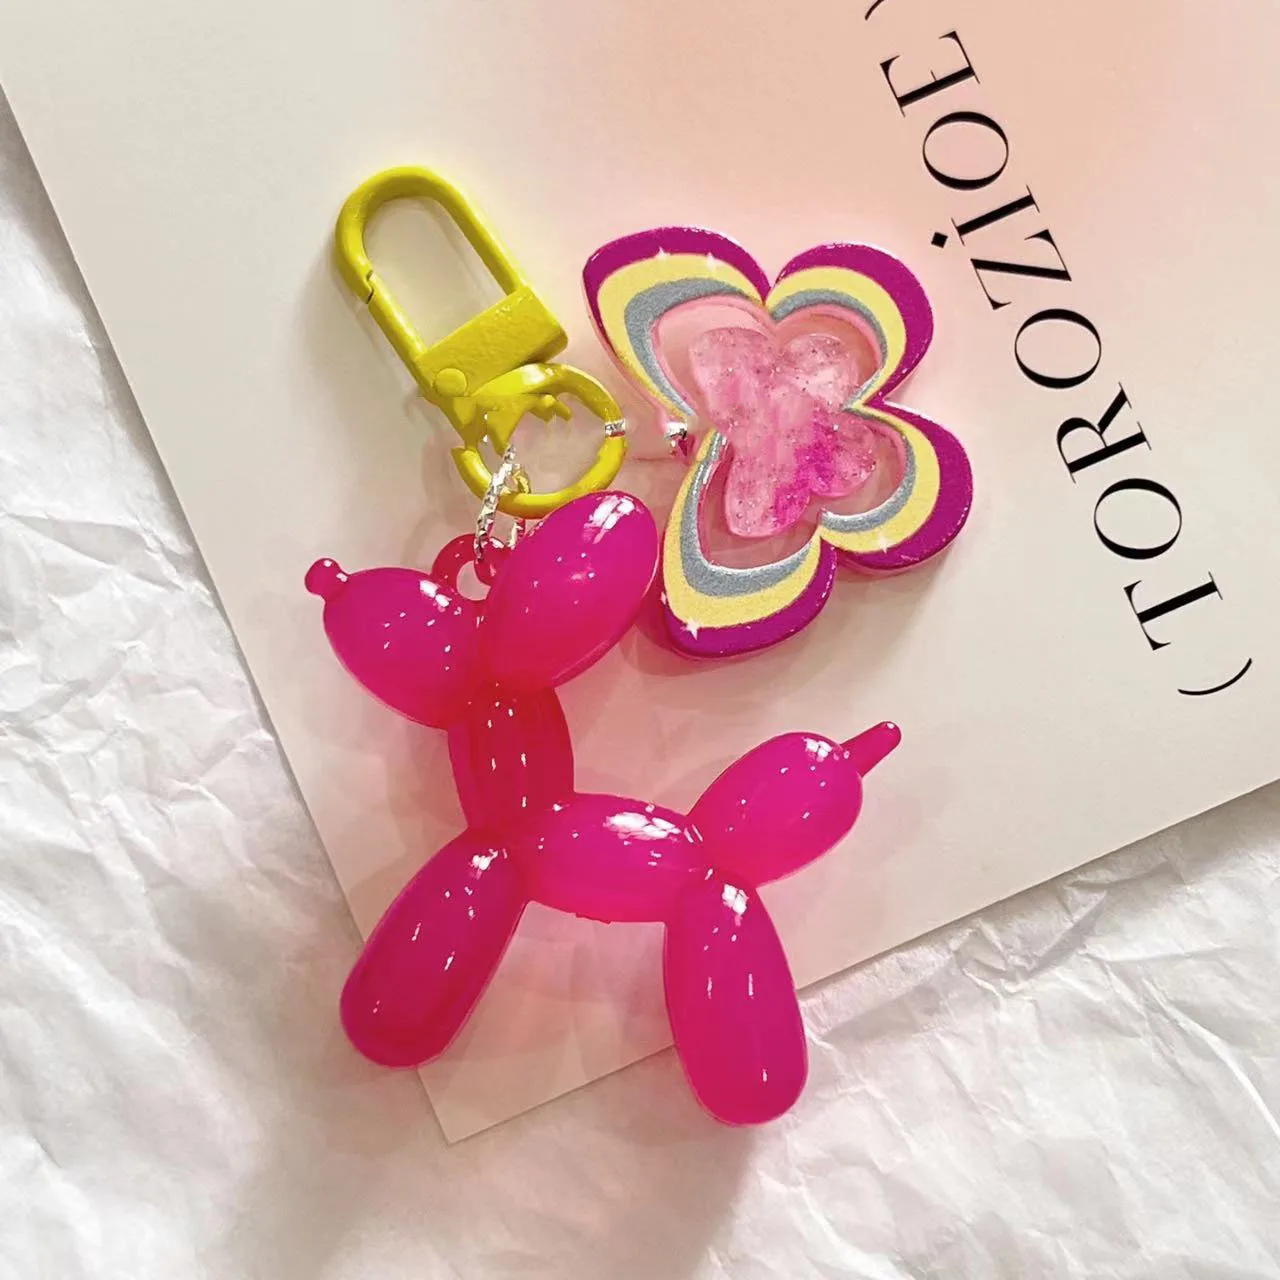 Kawaii Ballon Hund Schlüssel bund Modelle für Mädchen süß ins Stil Ballon Hund Telefon kette Schlüssel Schnalle Zubehör Tasche Anhänger Spielzeug neu